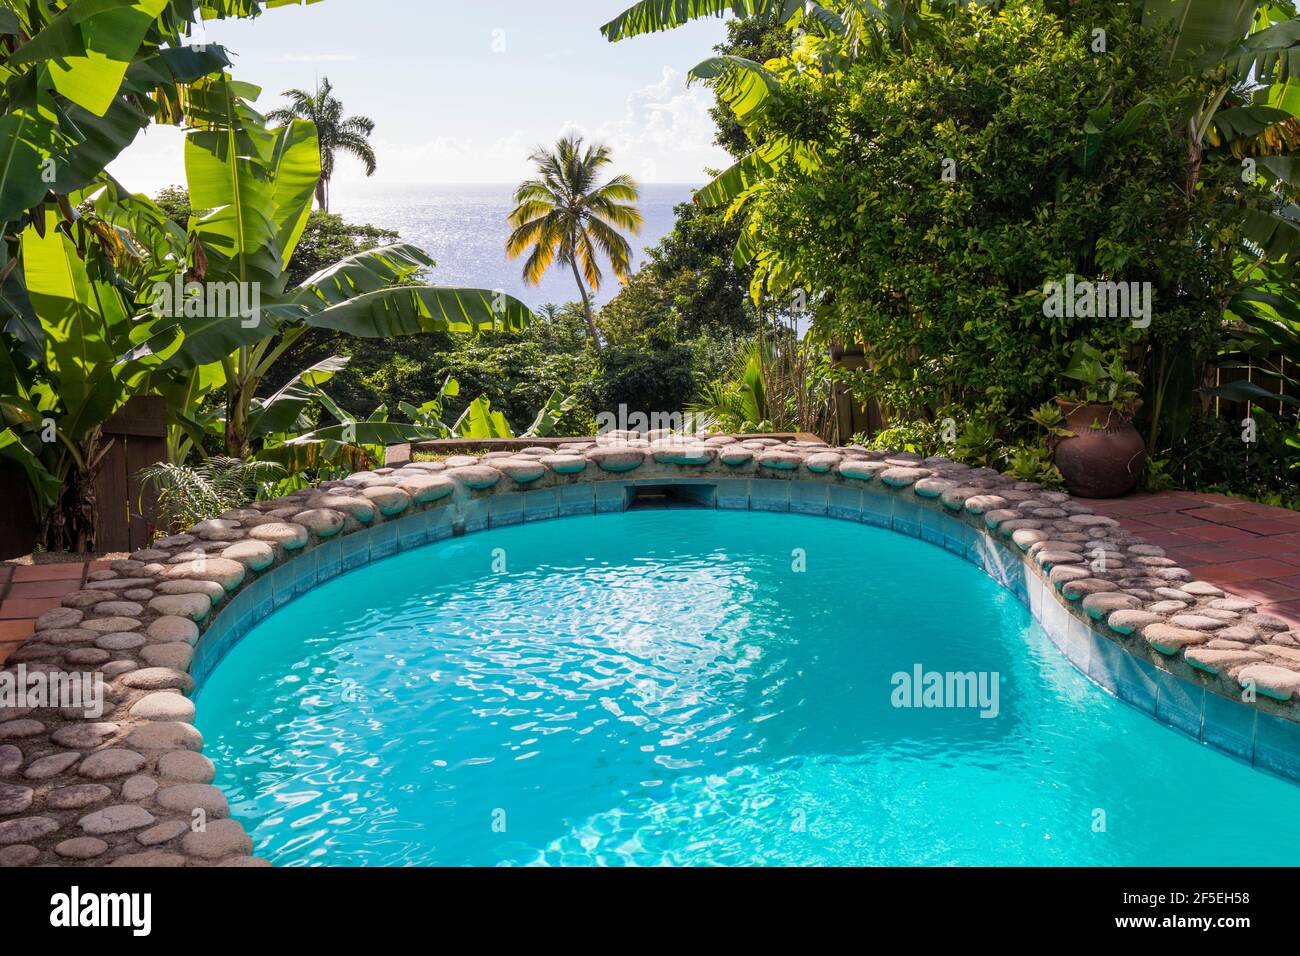 Soufriere, Santa Lucia. Piscina affacciata sul Mar dei Caraibi presso lo Stonefield Villa Resort. Foto Stock